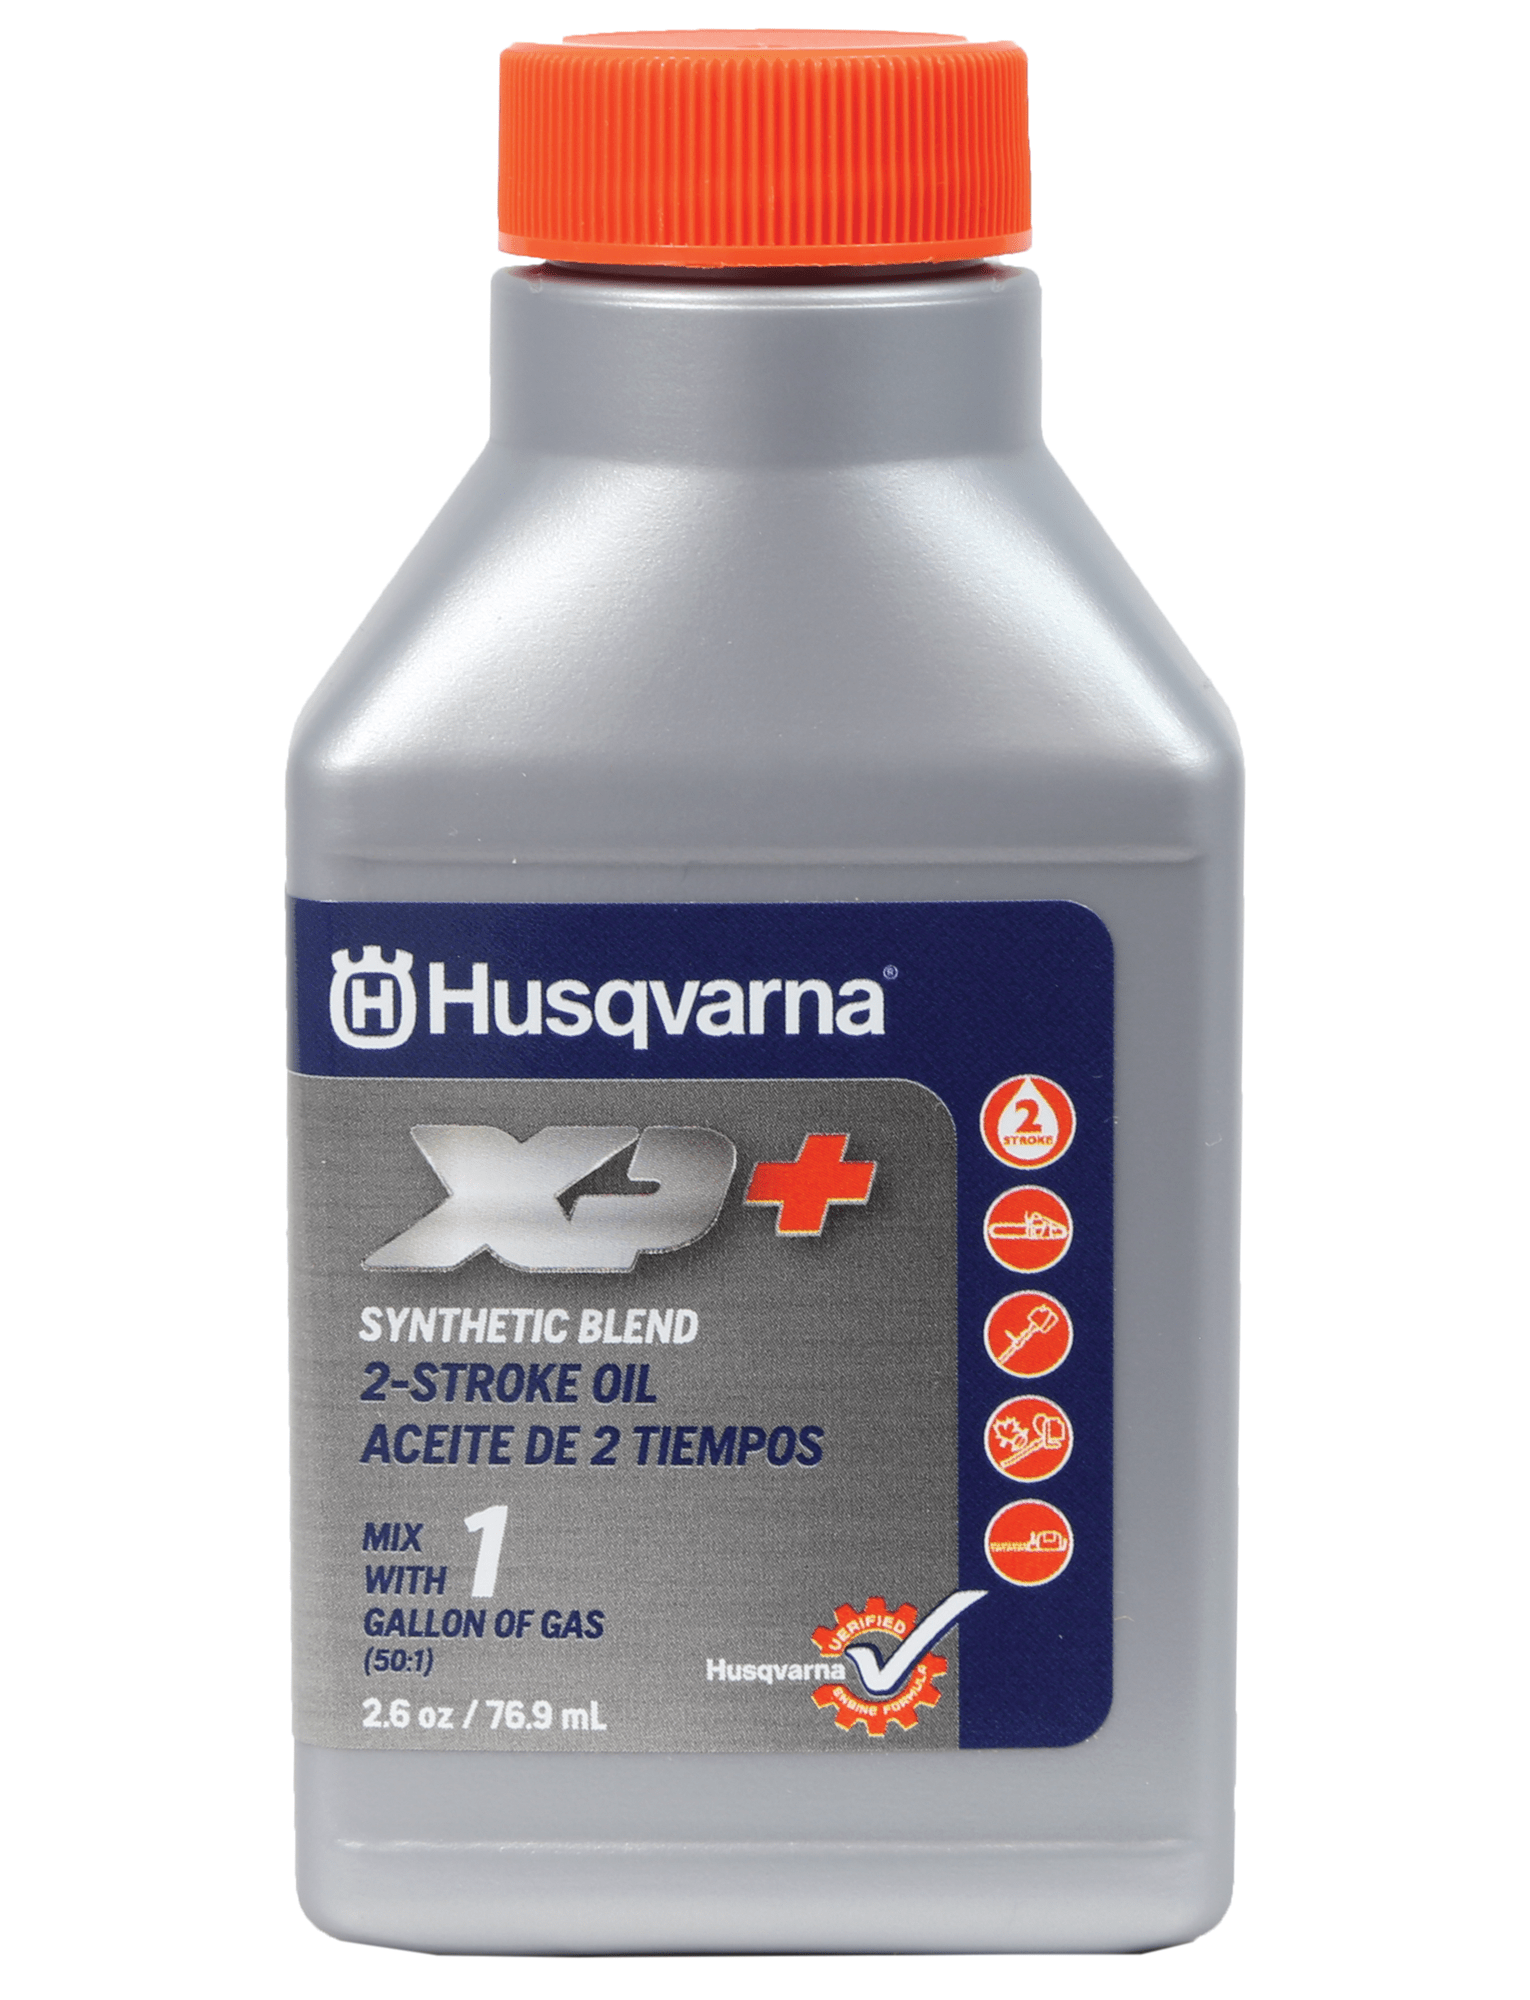 Husqvarna XP+ 2-Stroke Oil - 100 mL 6 Pack